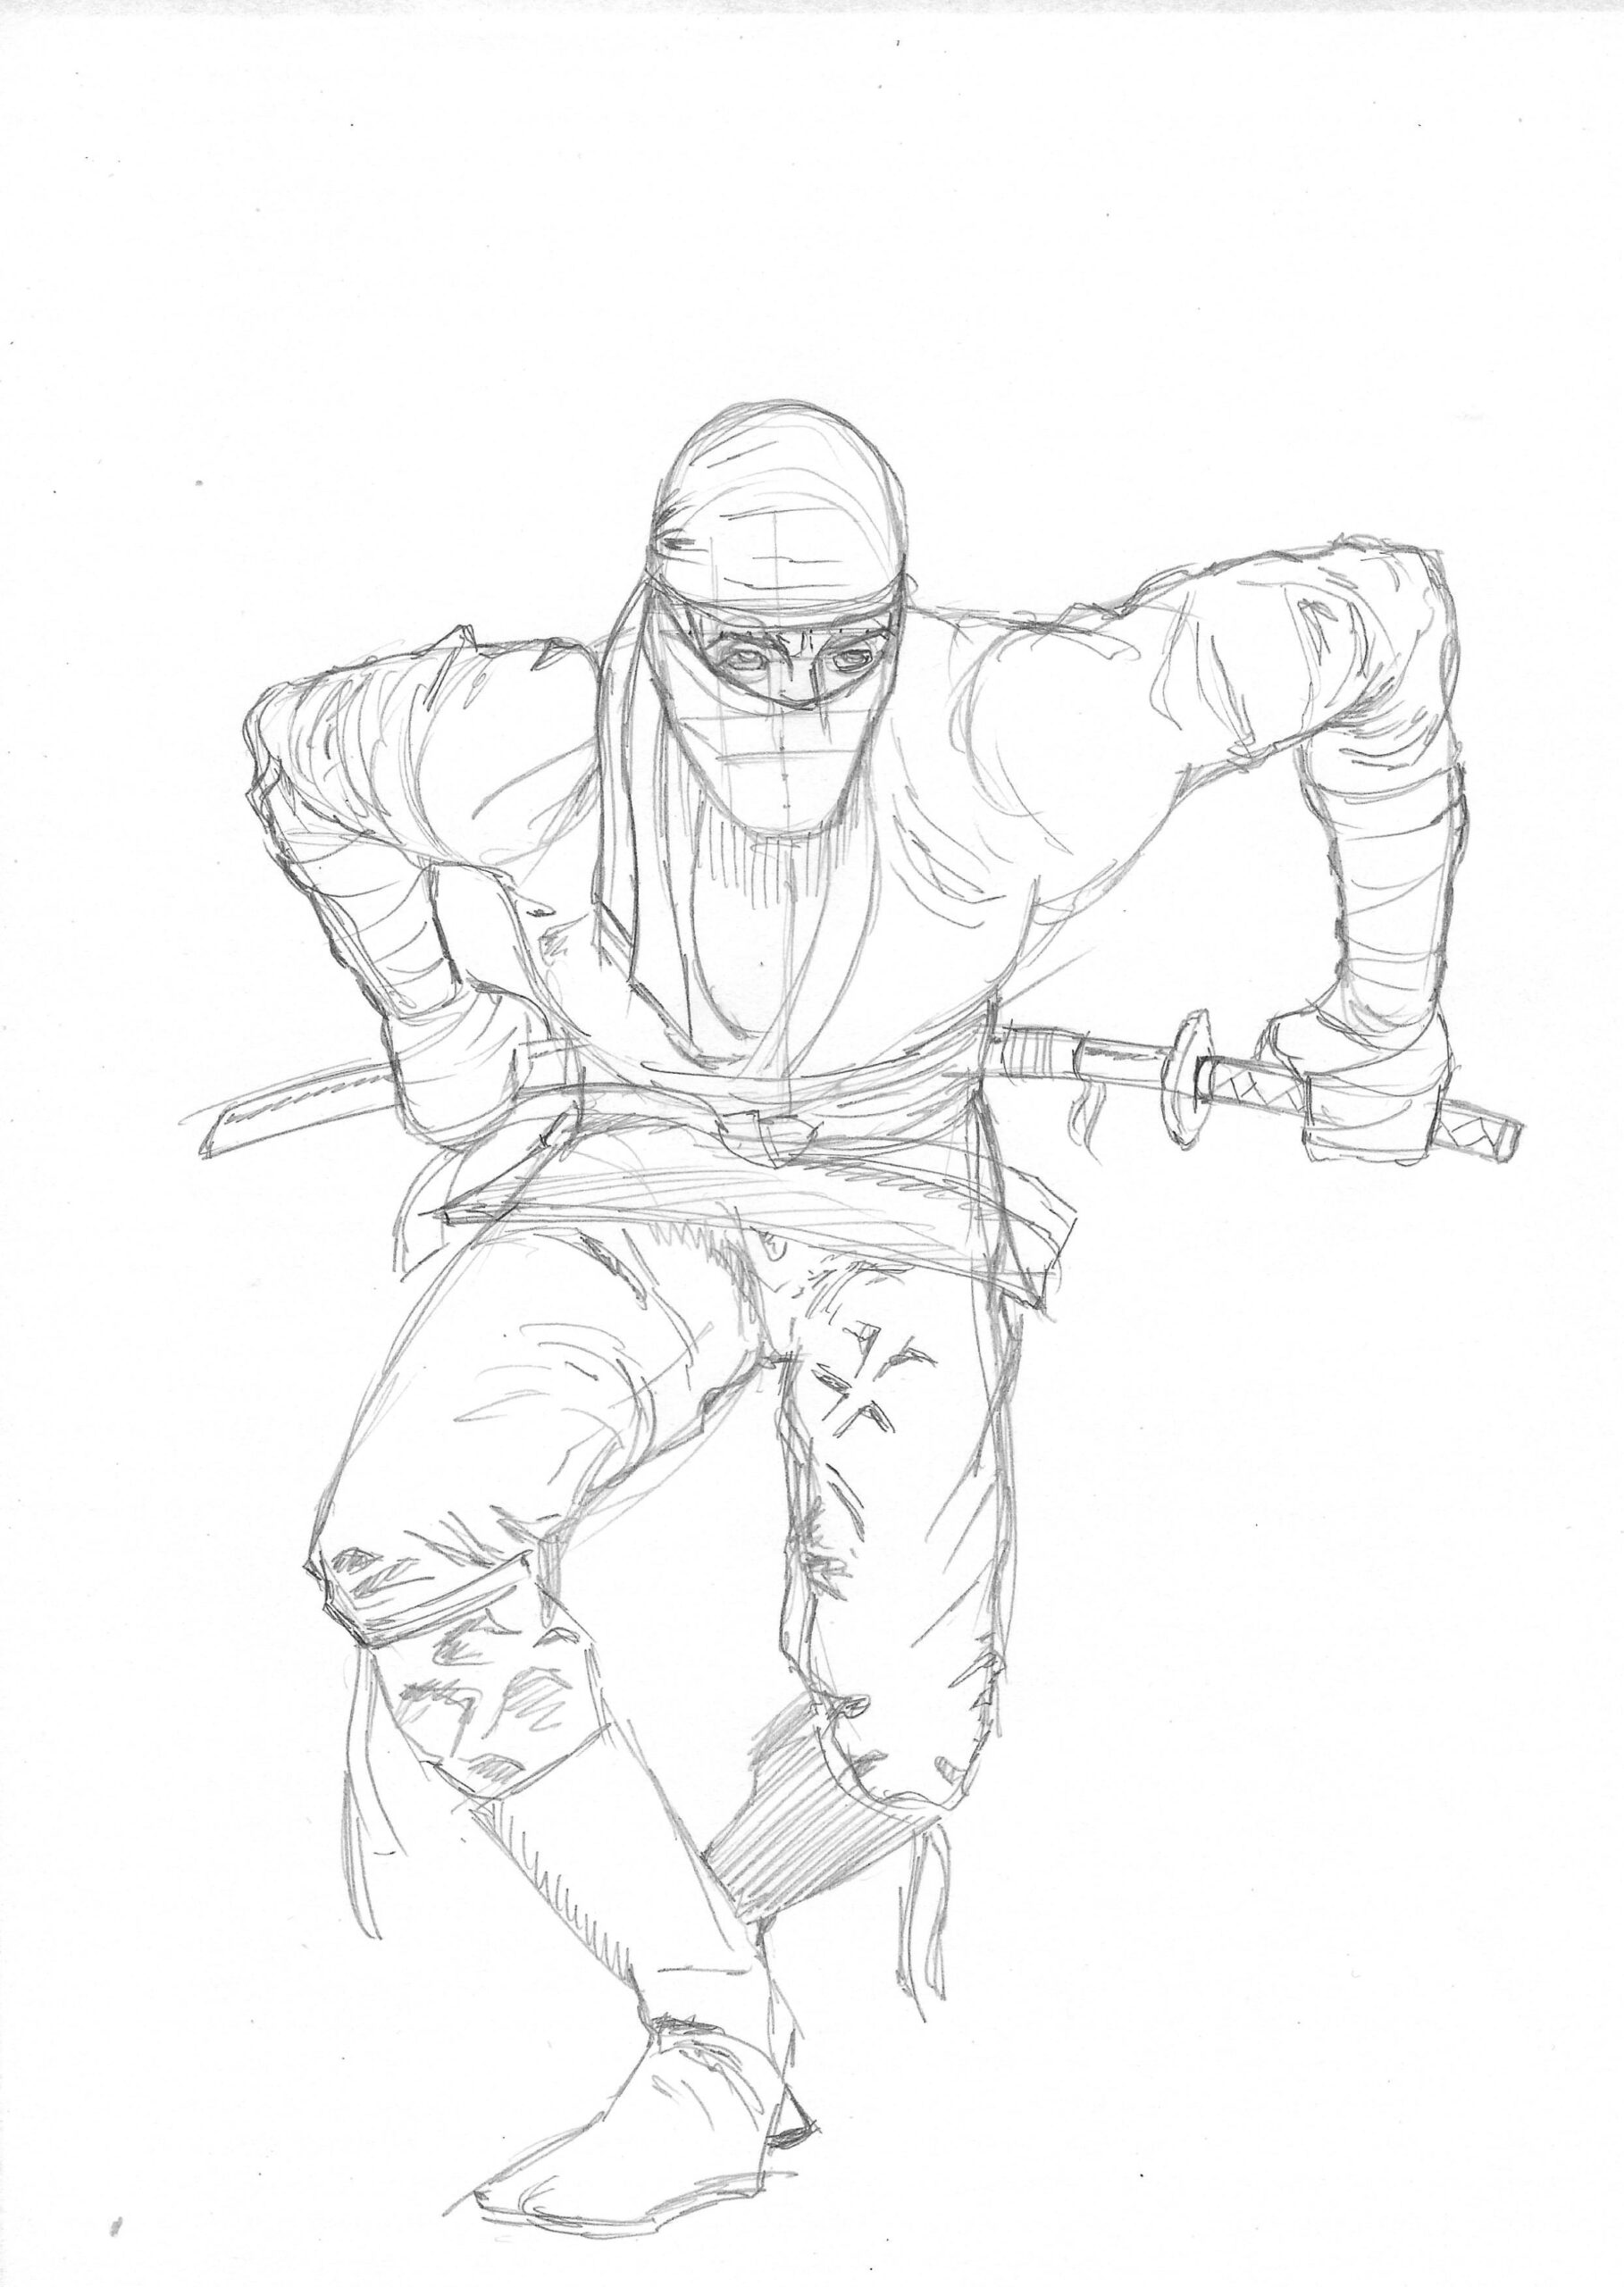 Ninja drawing reference